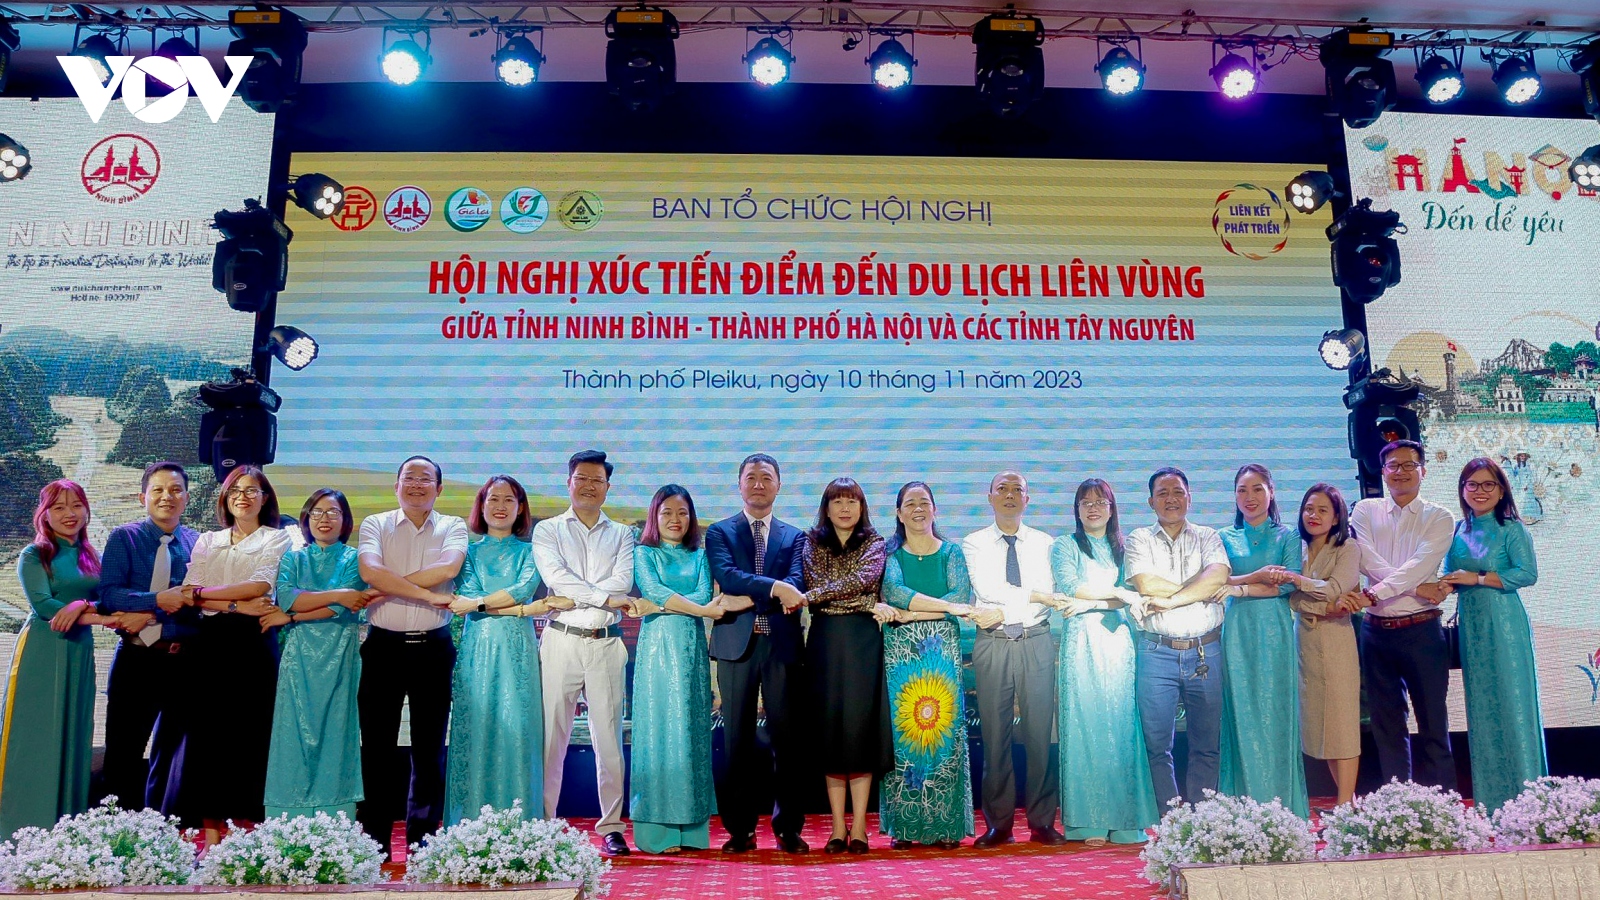 Thúc đẩy các tour du lịch giữa Hà Nội, Ninh Bình và miền Trung - Tây Nguyên